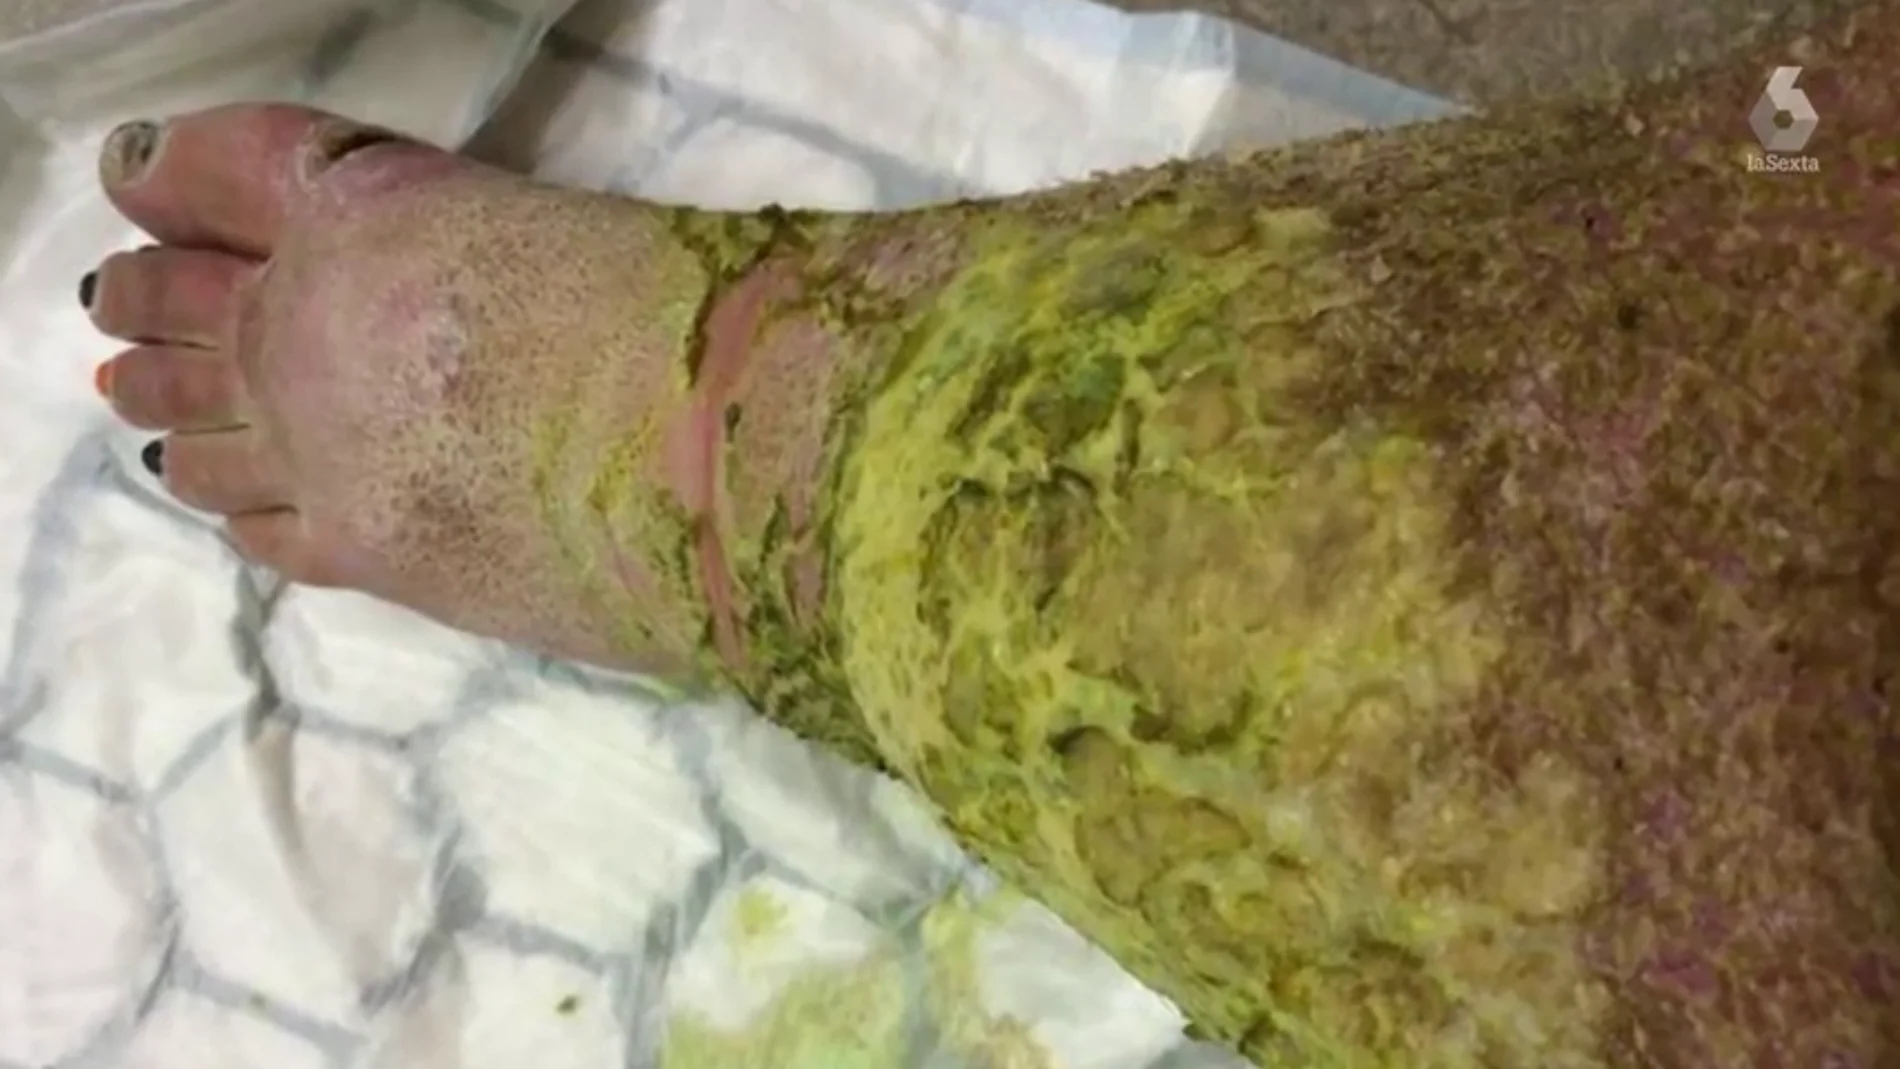 Amputan las piernas a una mujer después de sufrir una brutal infección tras caerse por las escaleras